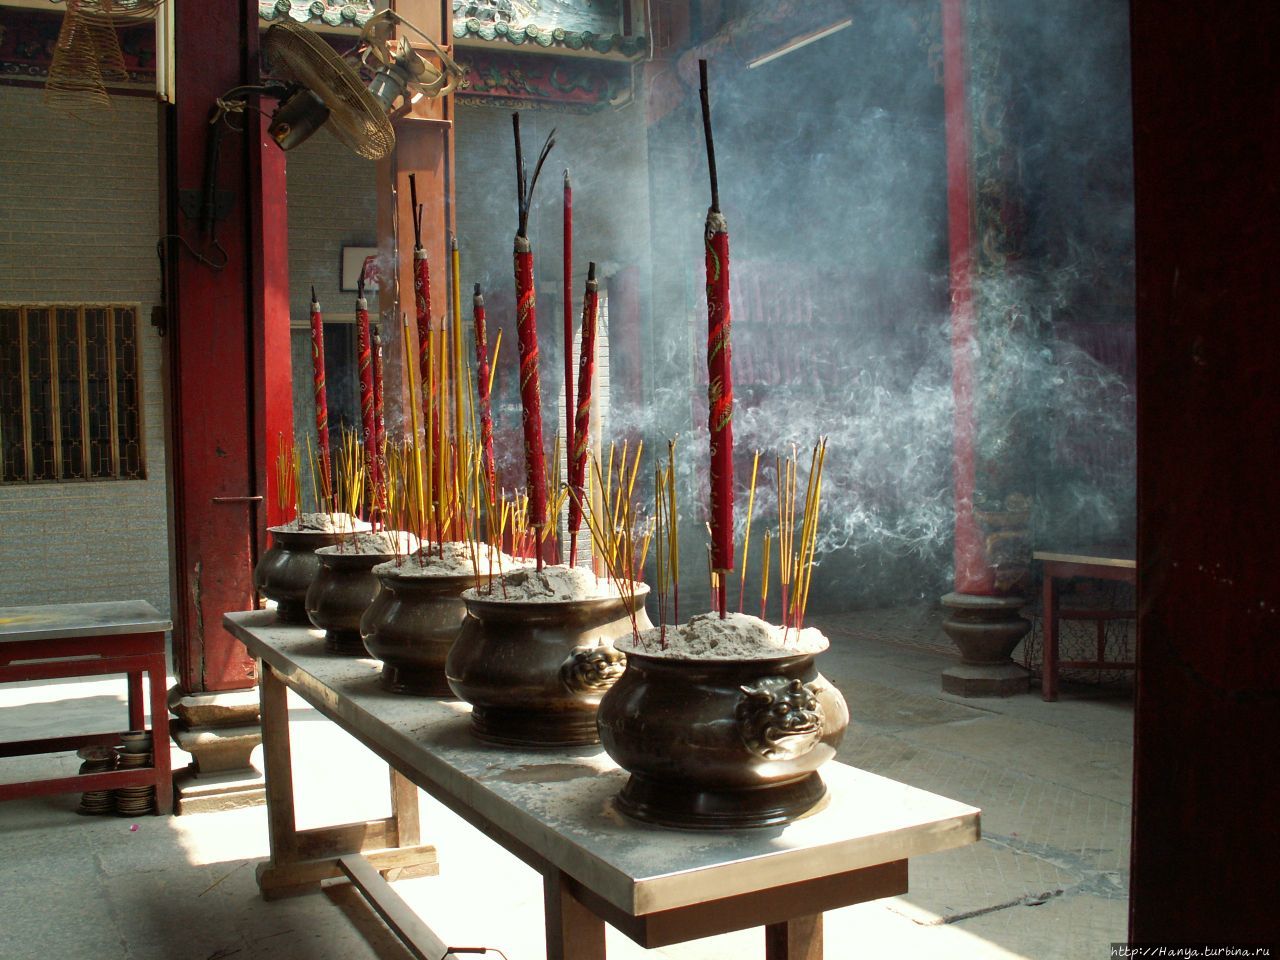 г.Хошимин. Пагода Тхиенхау, или Небесной женщины. Поминальные курительницы Хошимин, Вьетнам